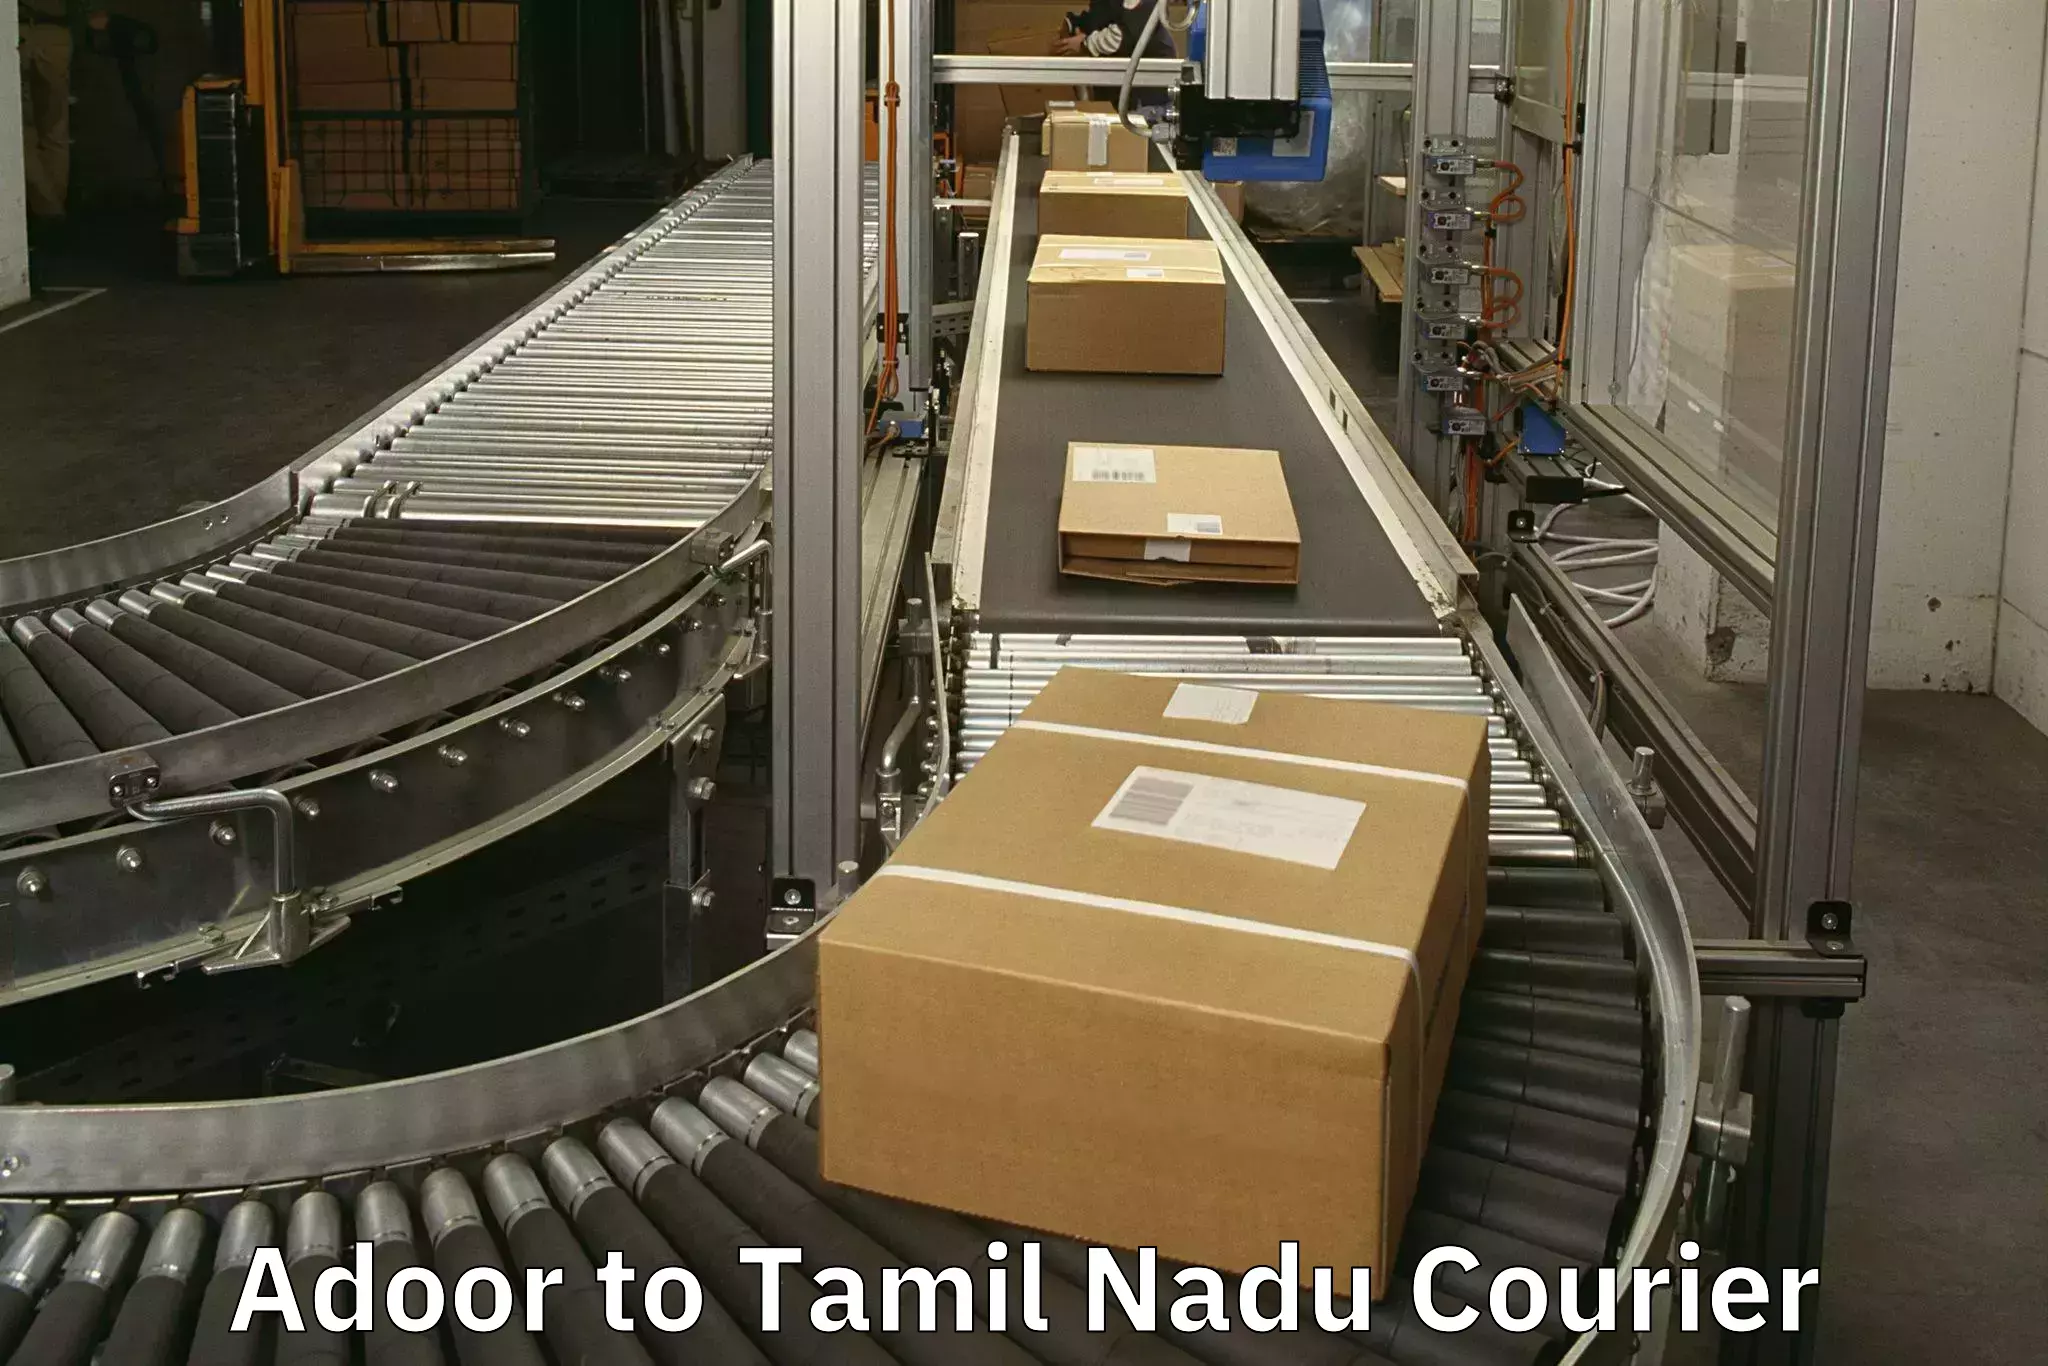 Baggage relocation service Adoor to Tamil Nadu